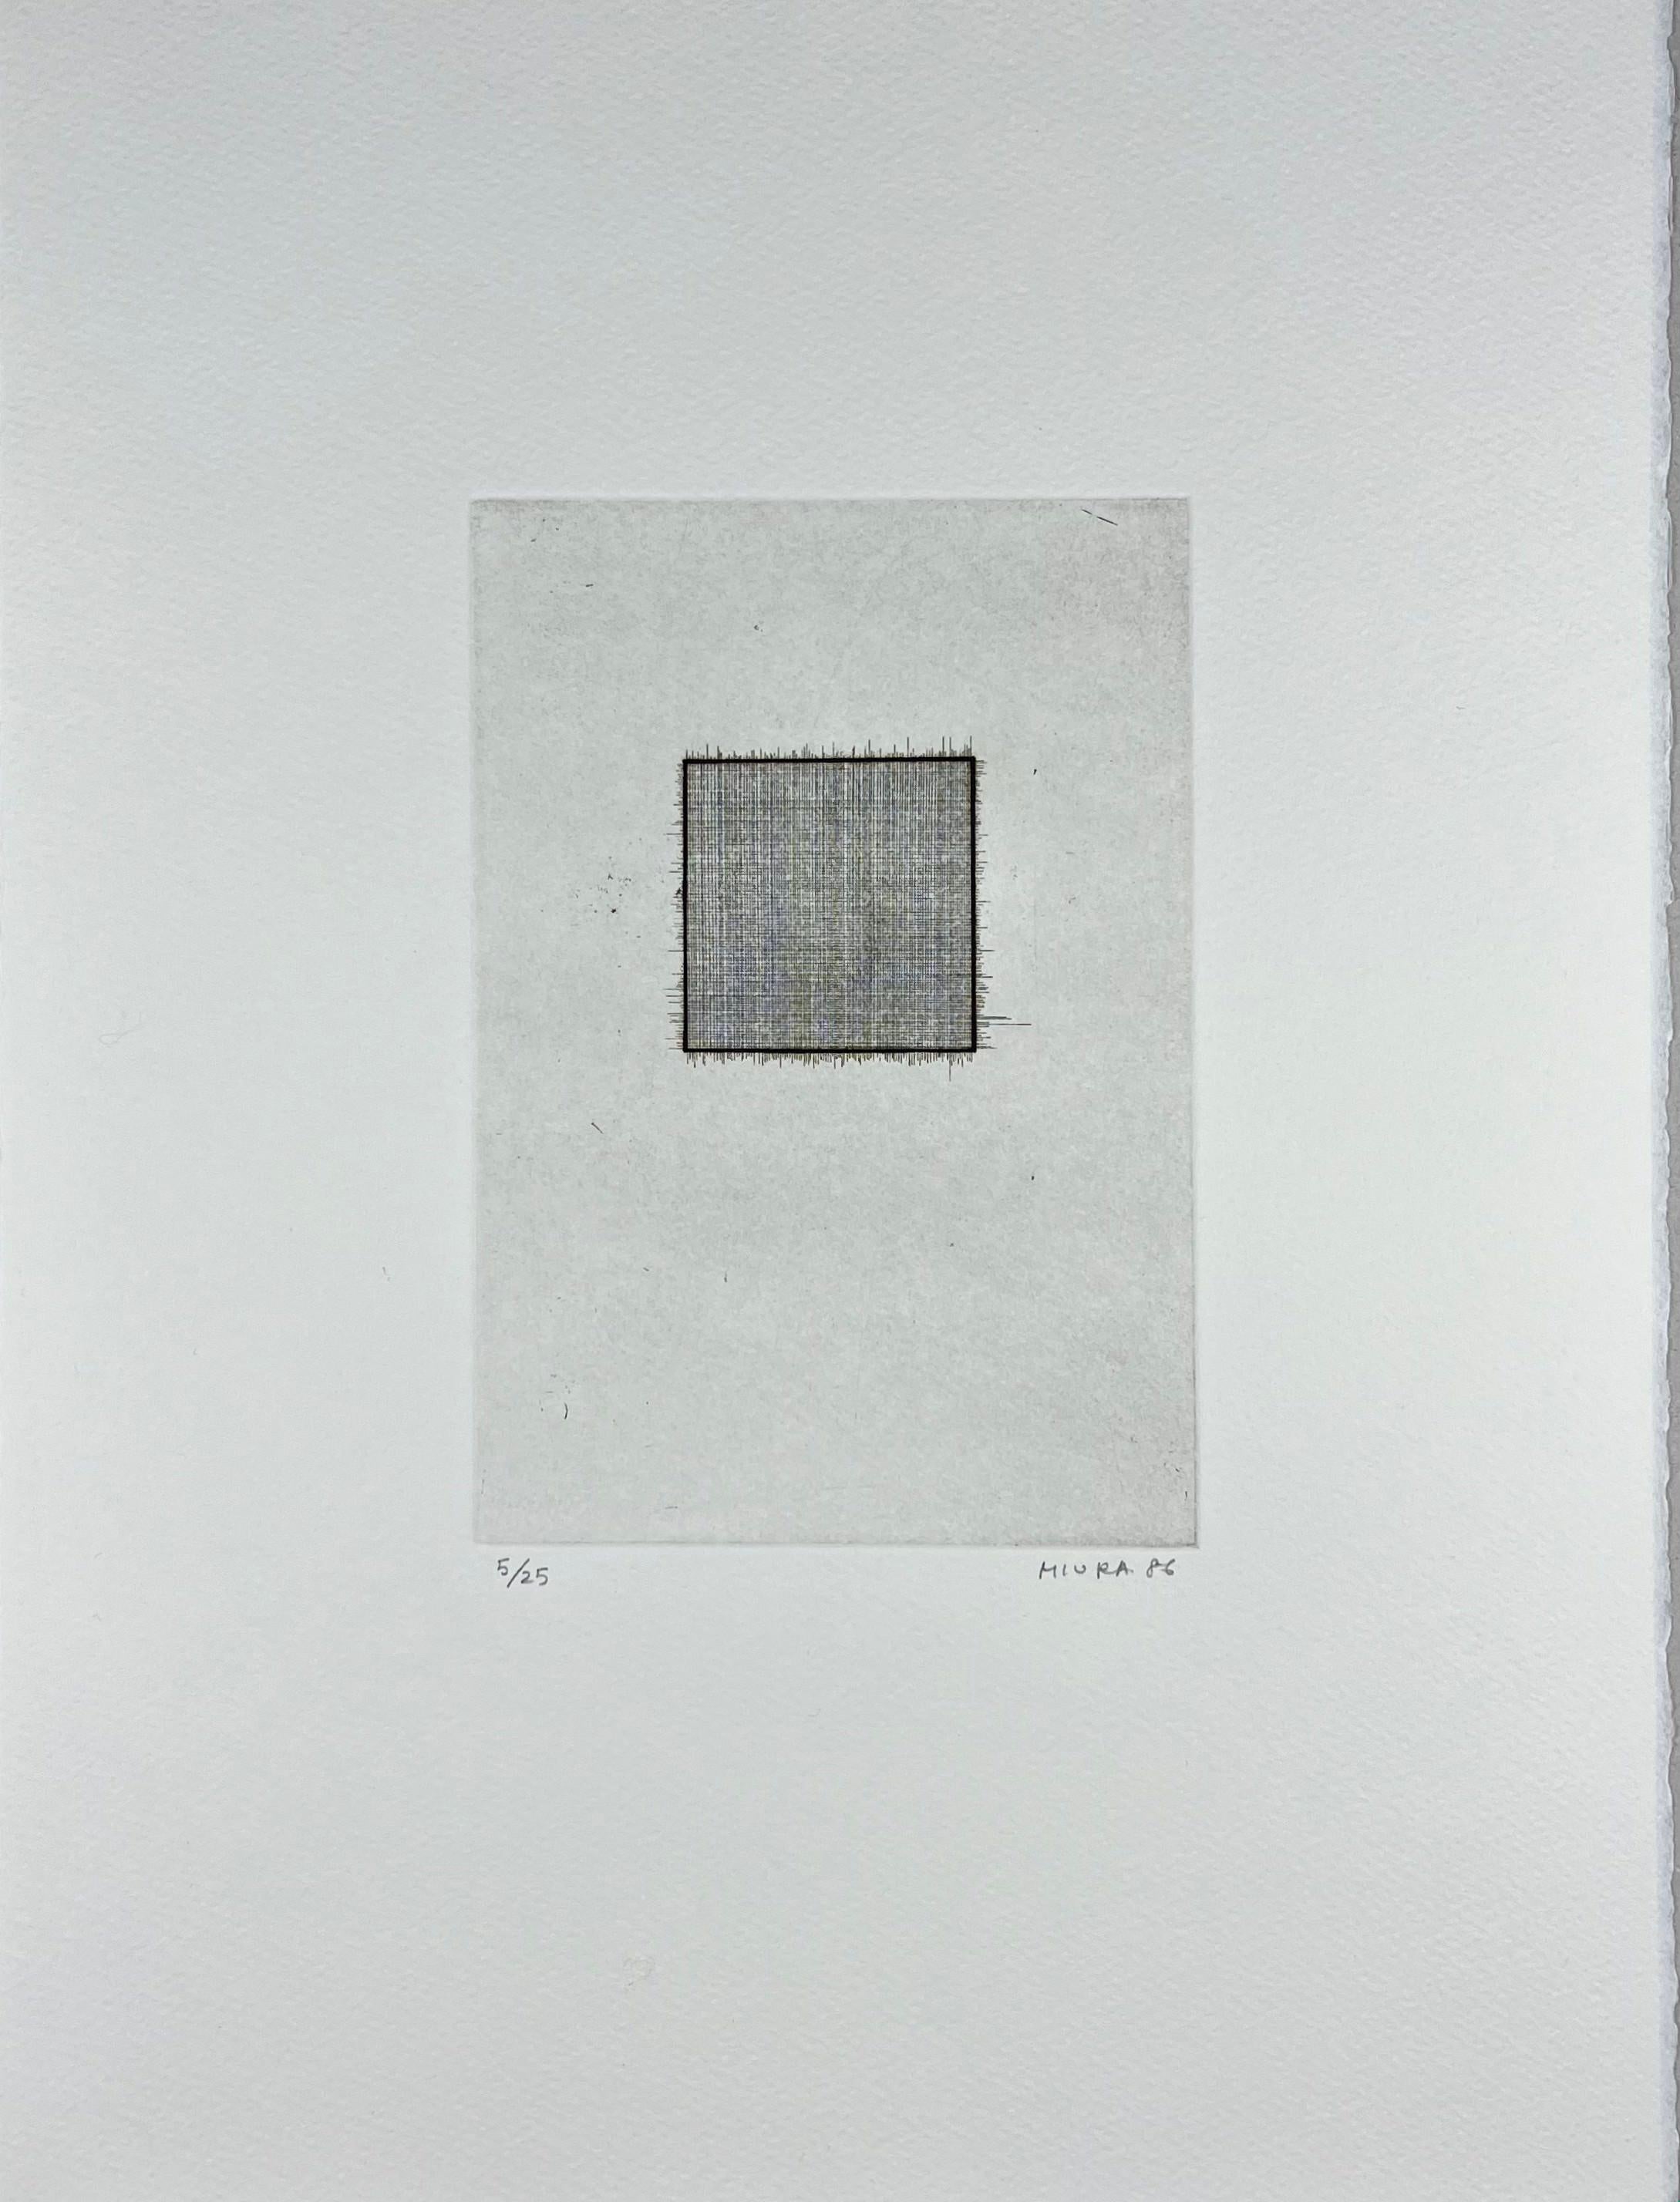 Mitsuo Miura Abstract Print – Japan 1986 signierter Original-Kunstdruck Radierung in limitierter Auflage  15x11 Zoll.